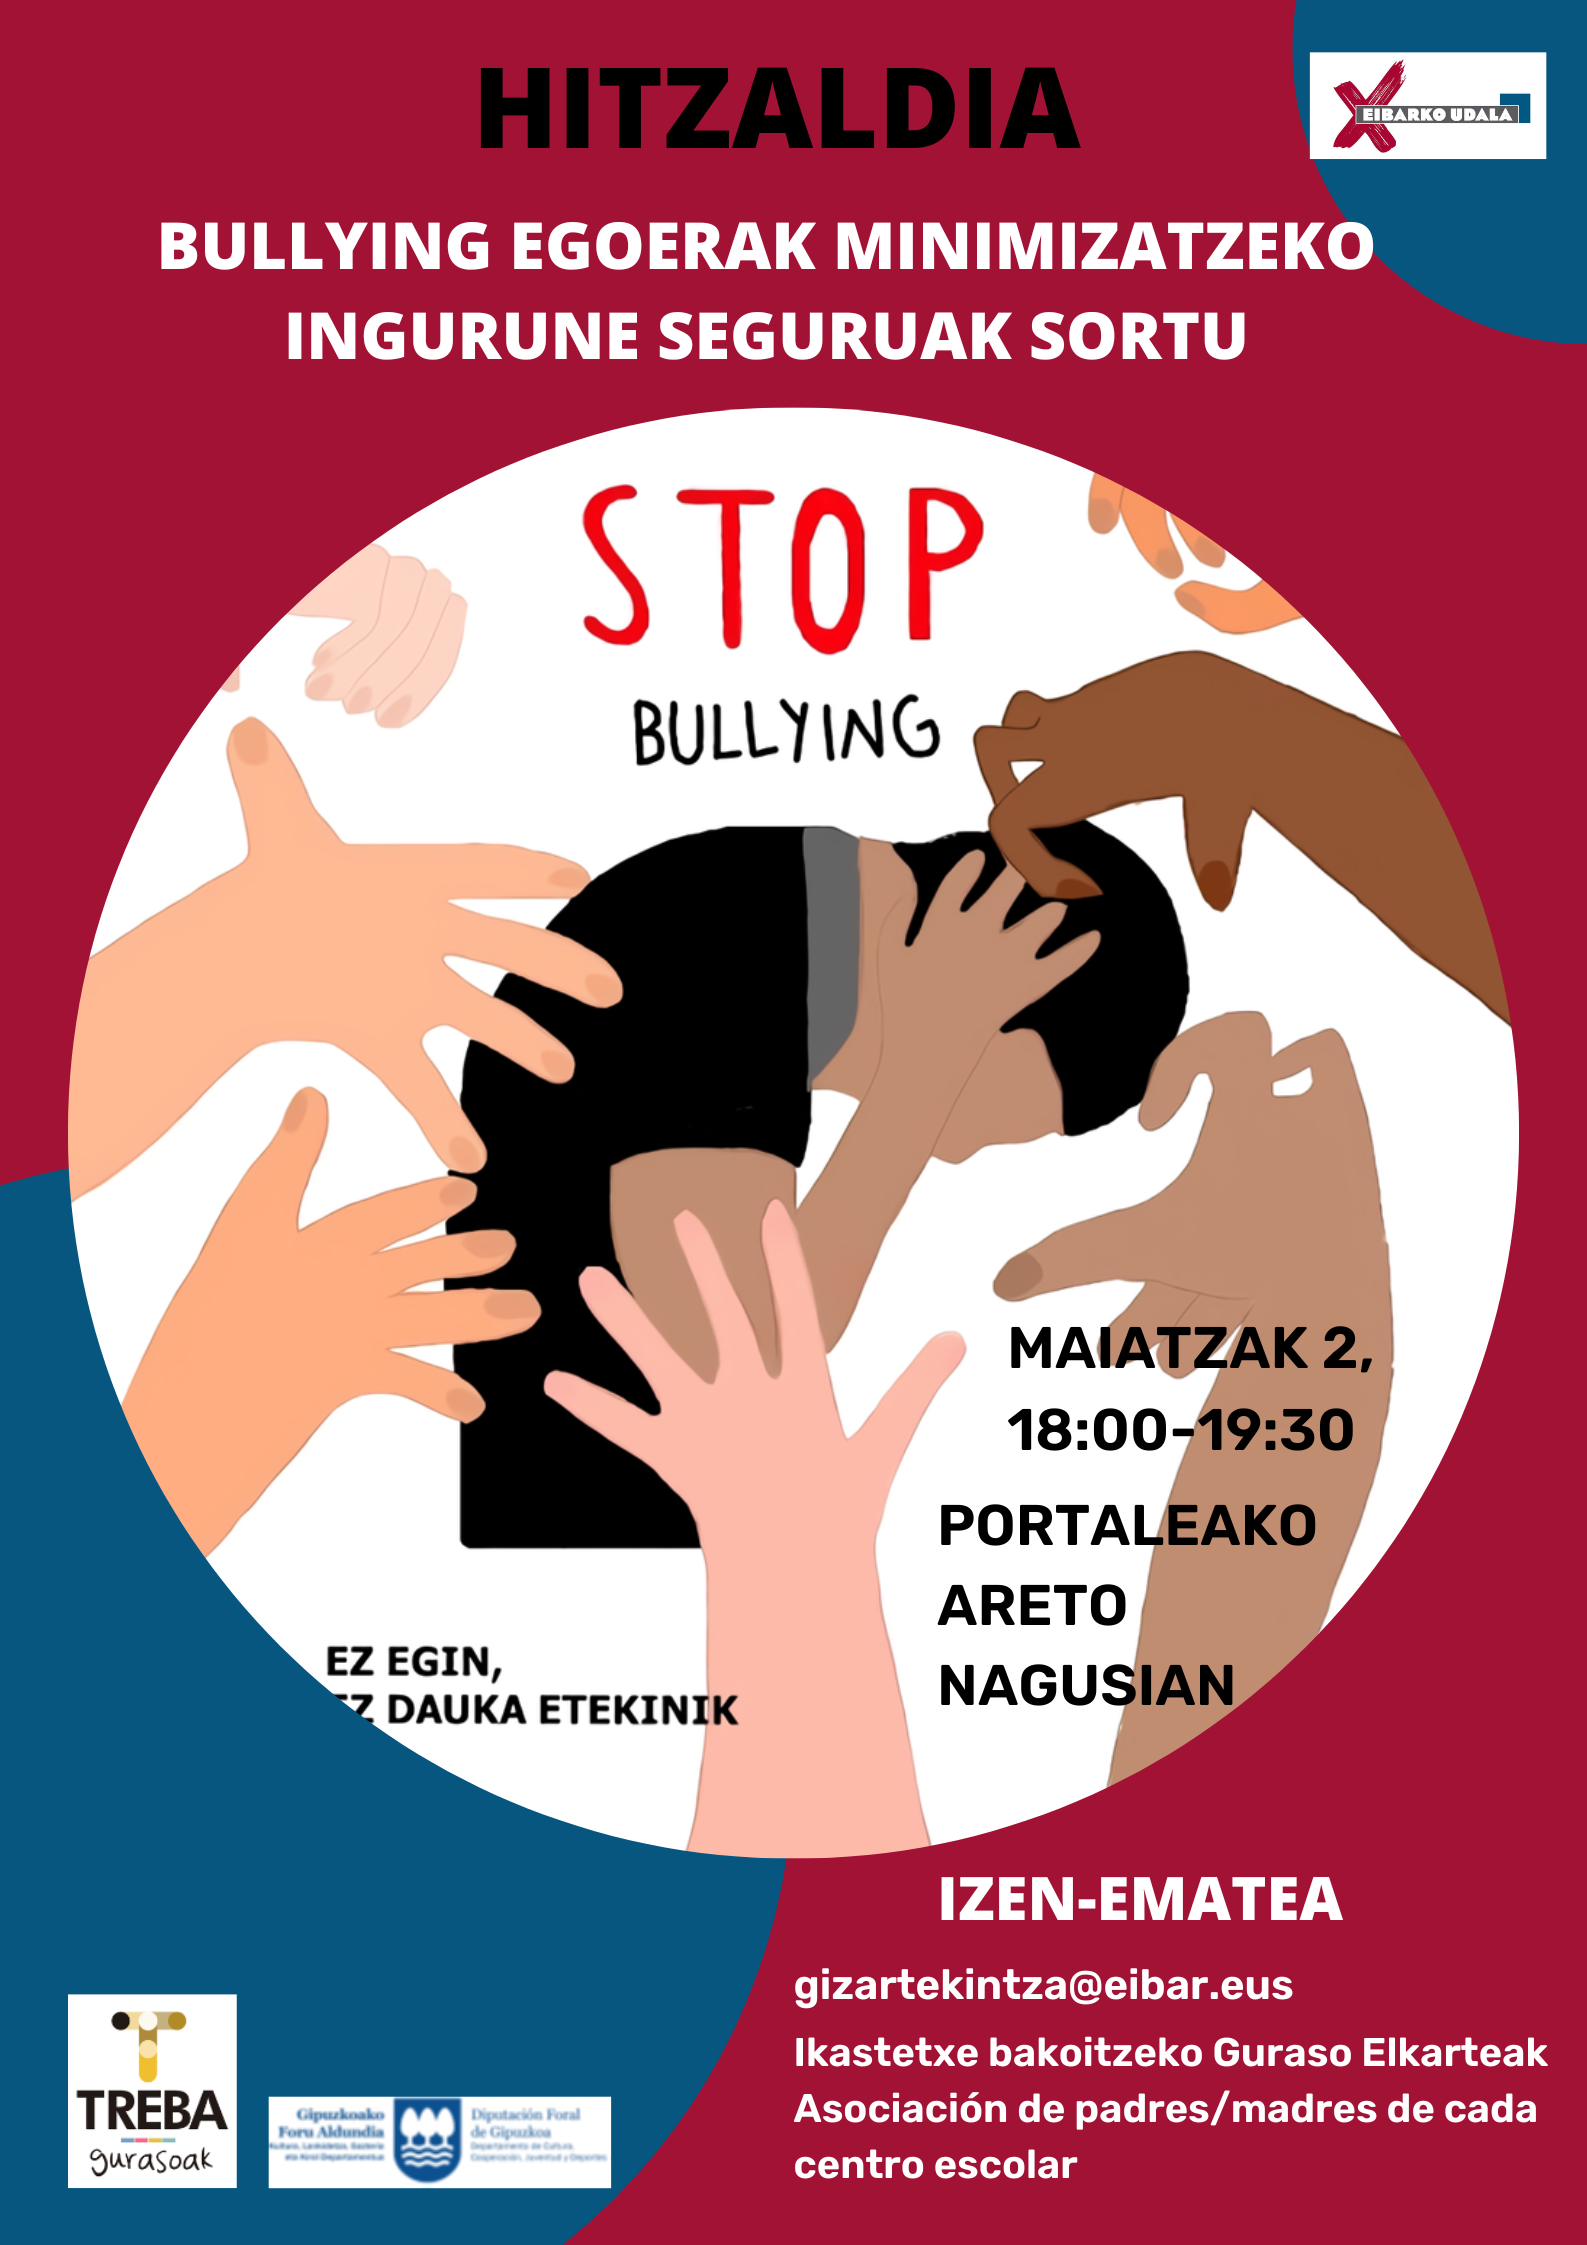 "Crear entornos seguros para minimizar situaciones de bullying", charla dirigida a padres y madres, el 2 de mayo en Portalea